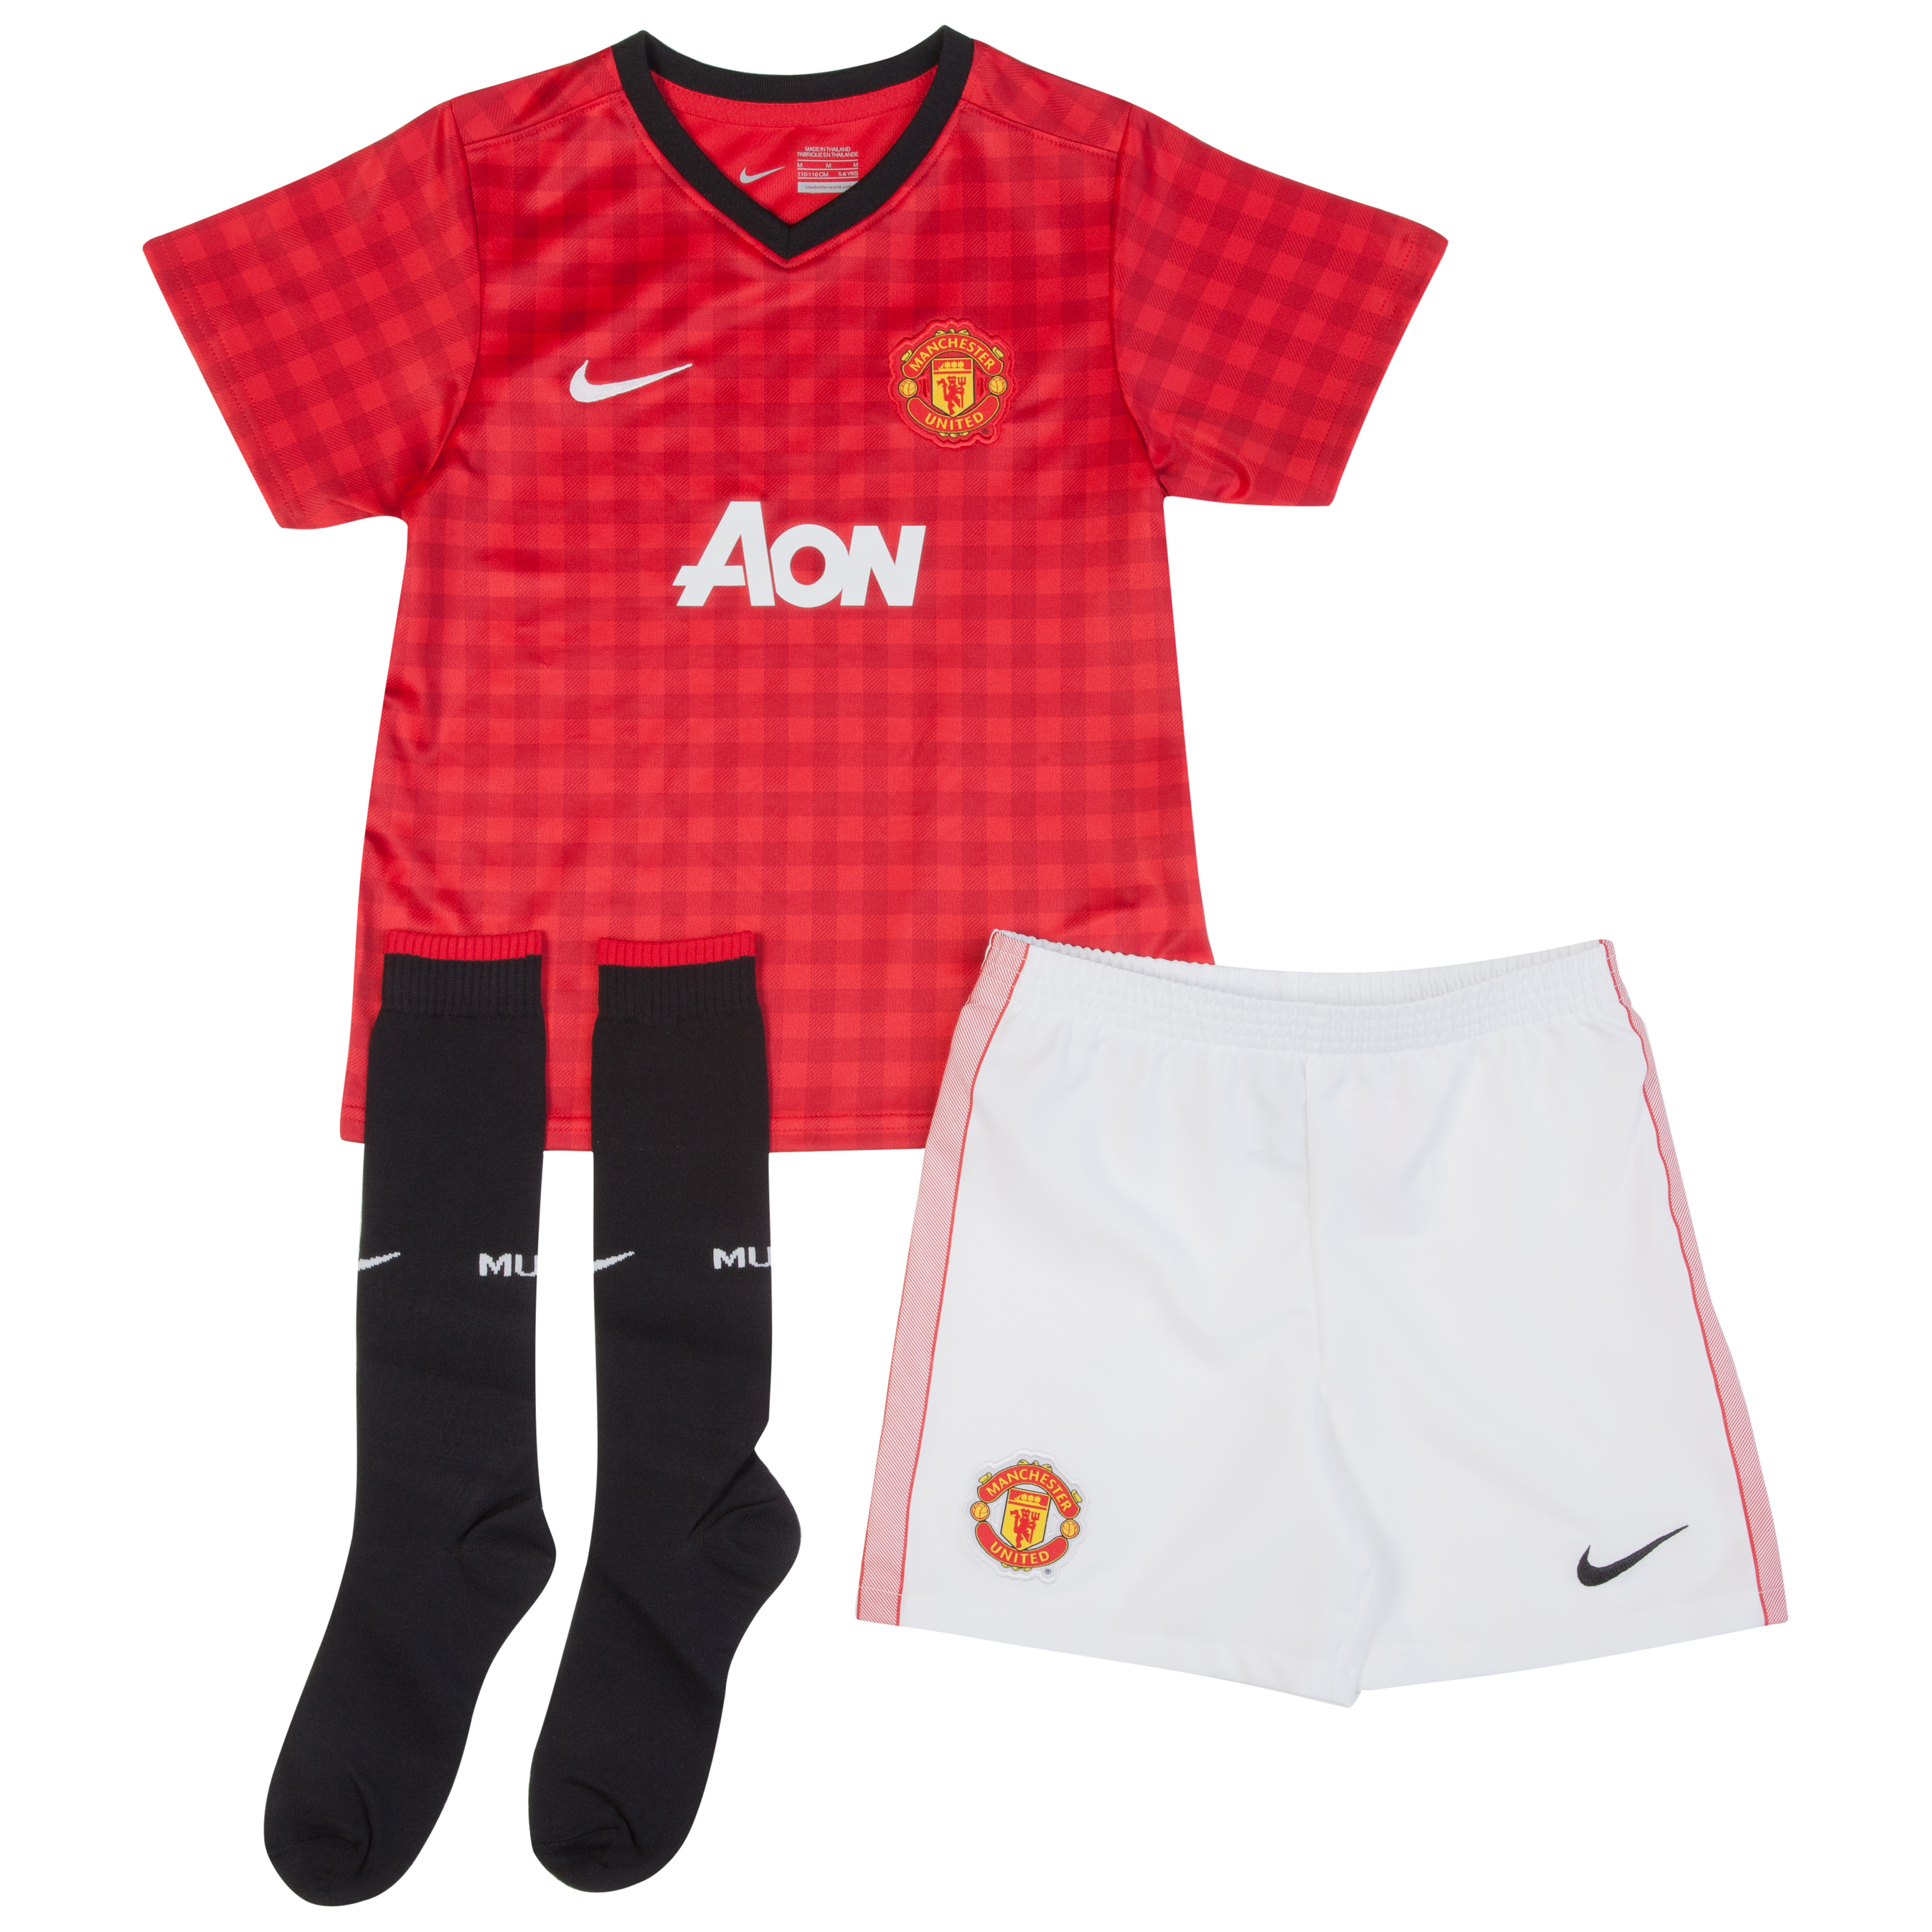 Manchester United Home Kit 2012/13 -  Little Boys